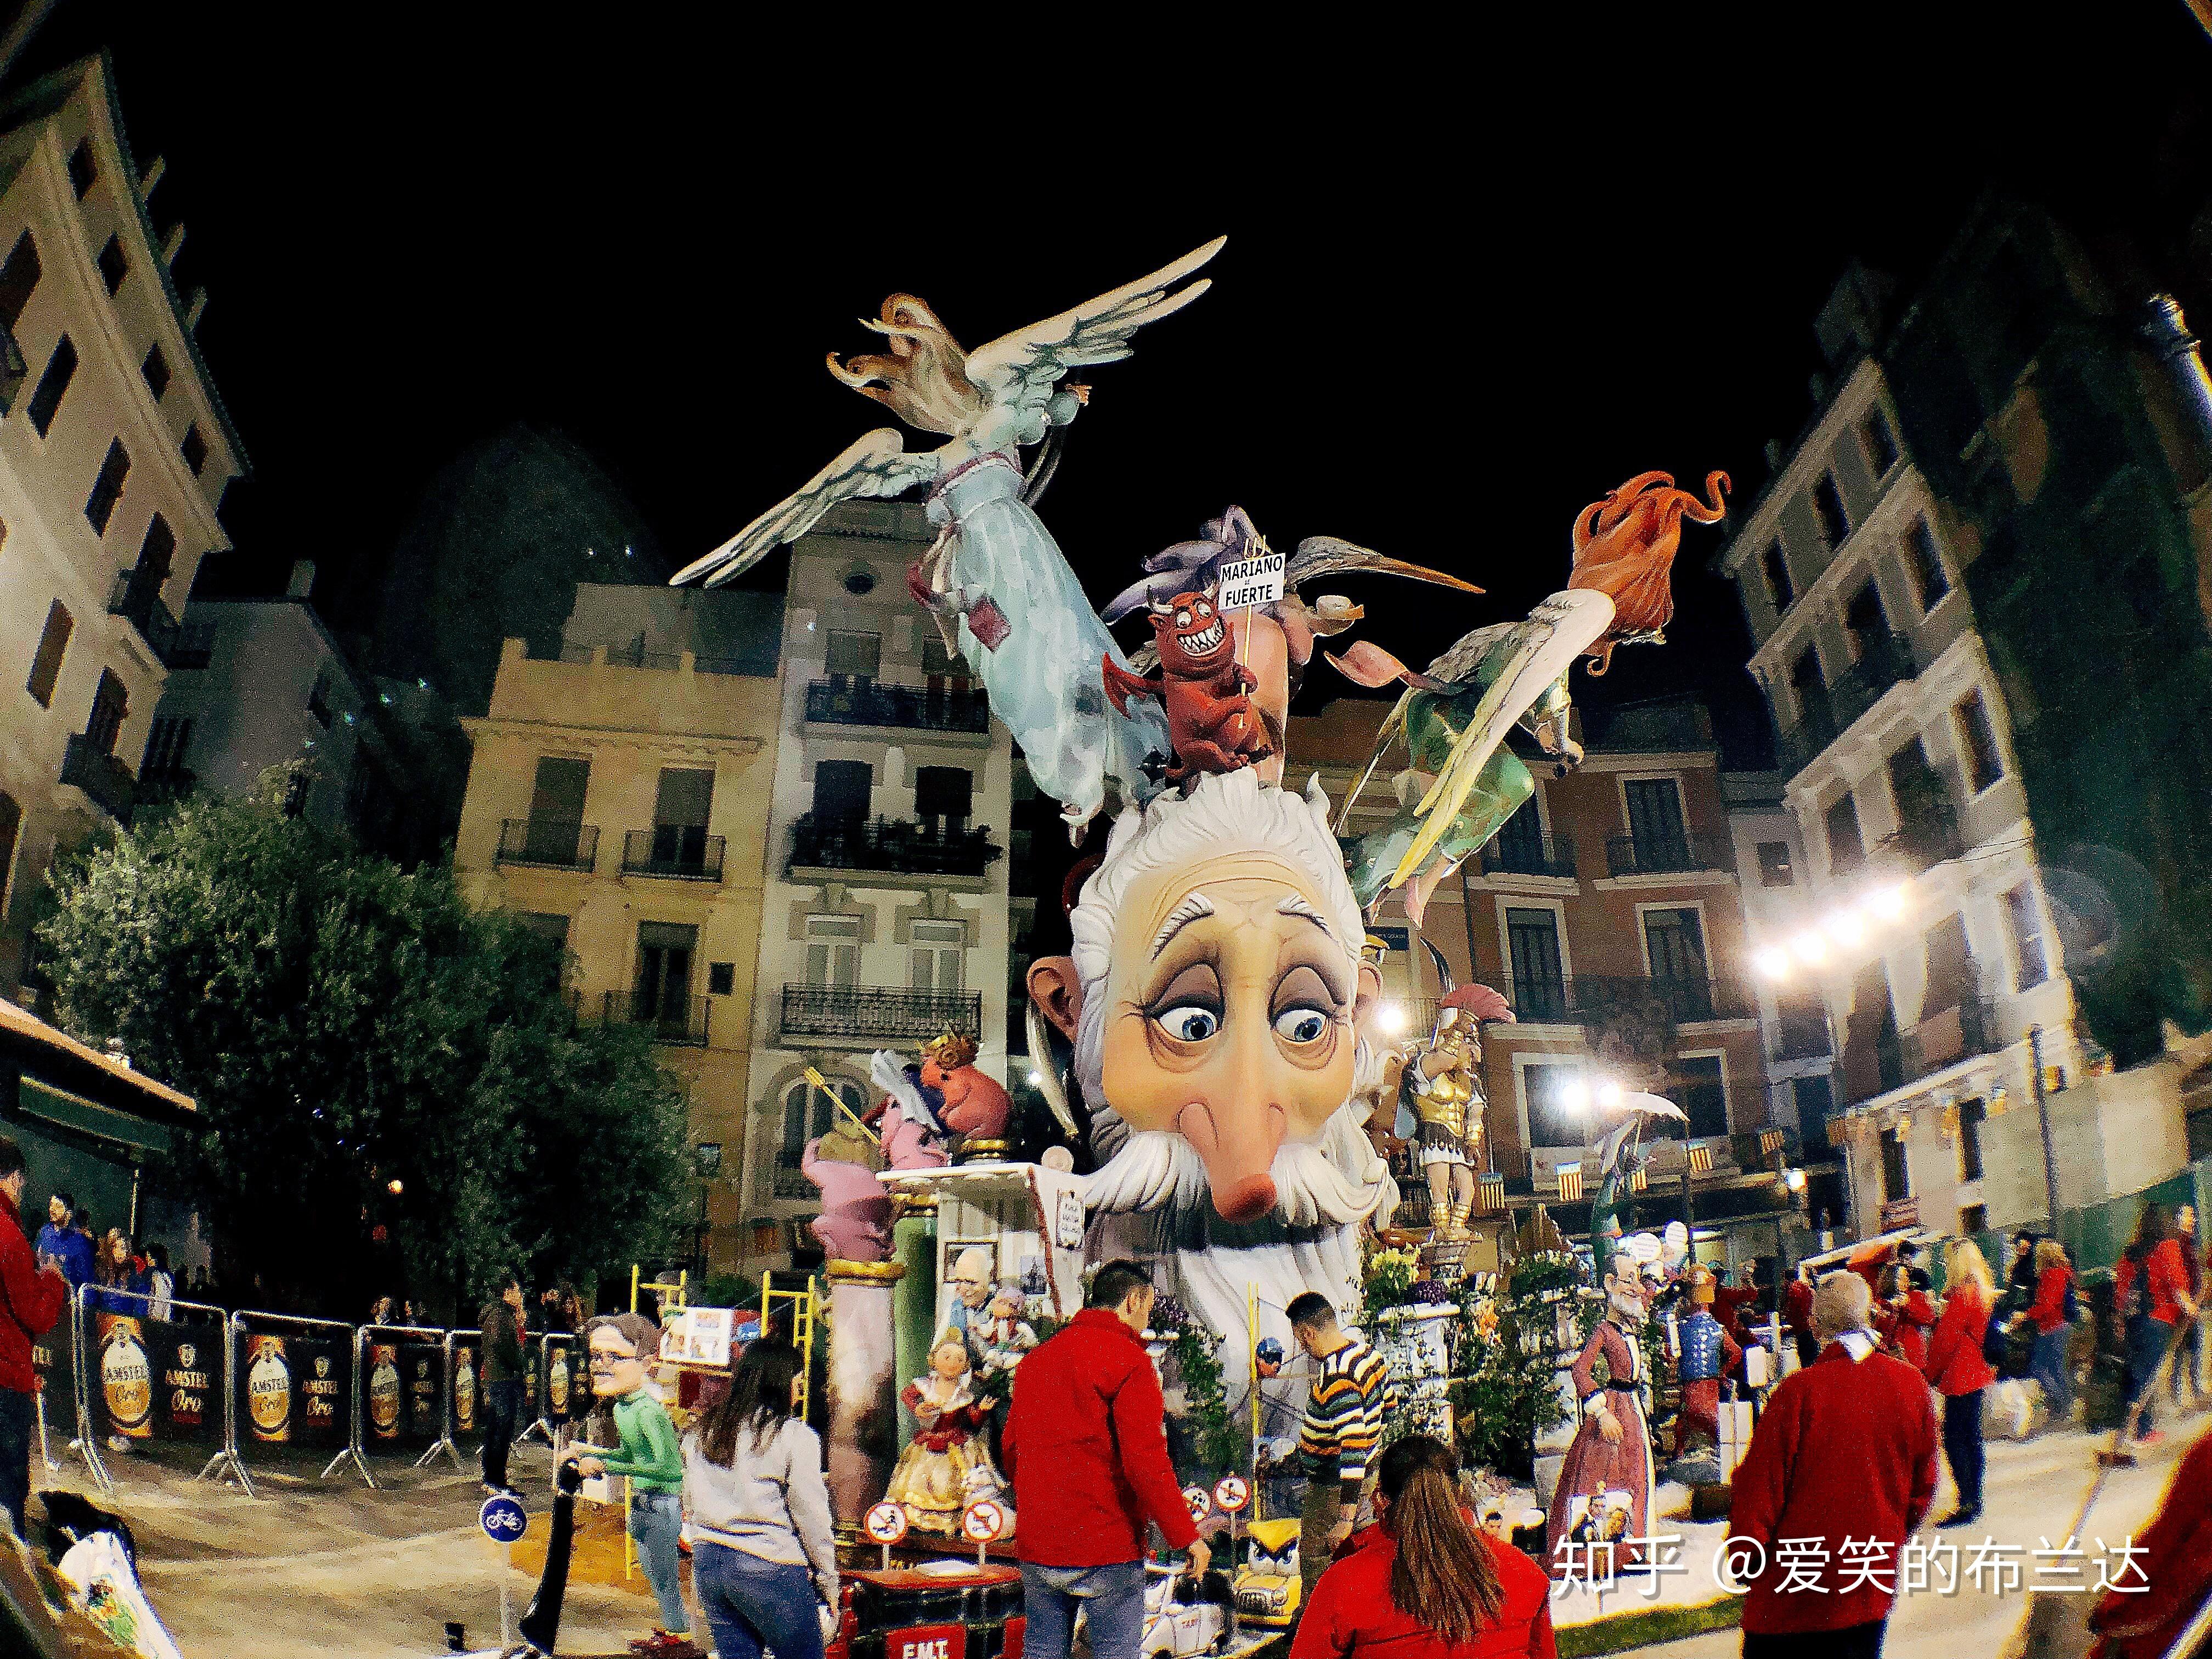 西班牙游记今天带你去逛逛西班牙最盛大的节日之一法雅节